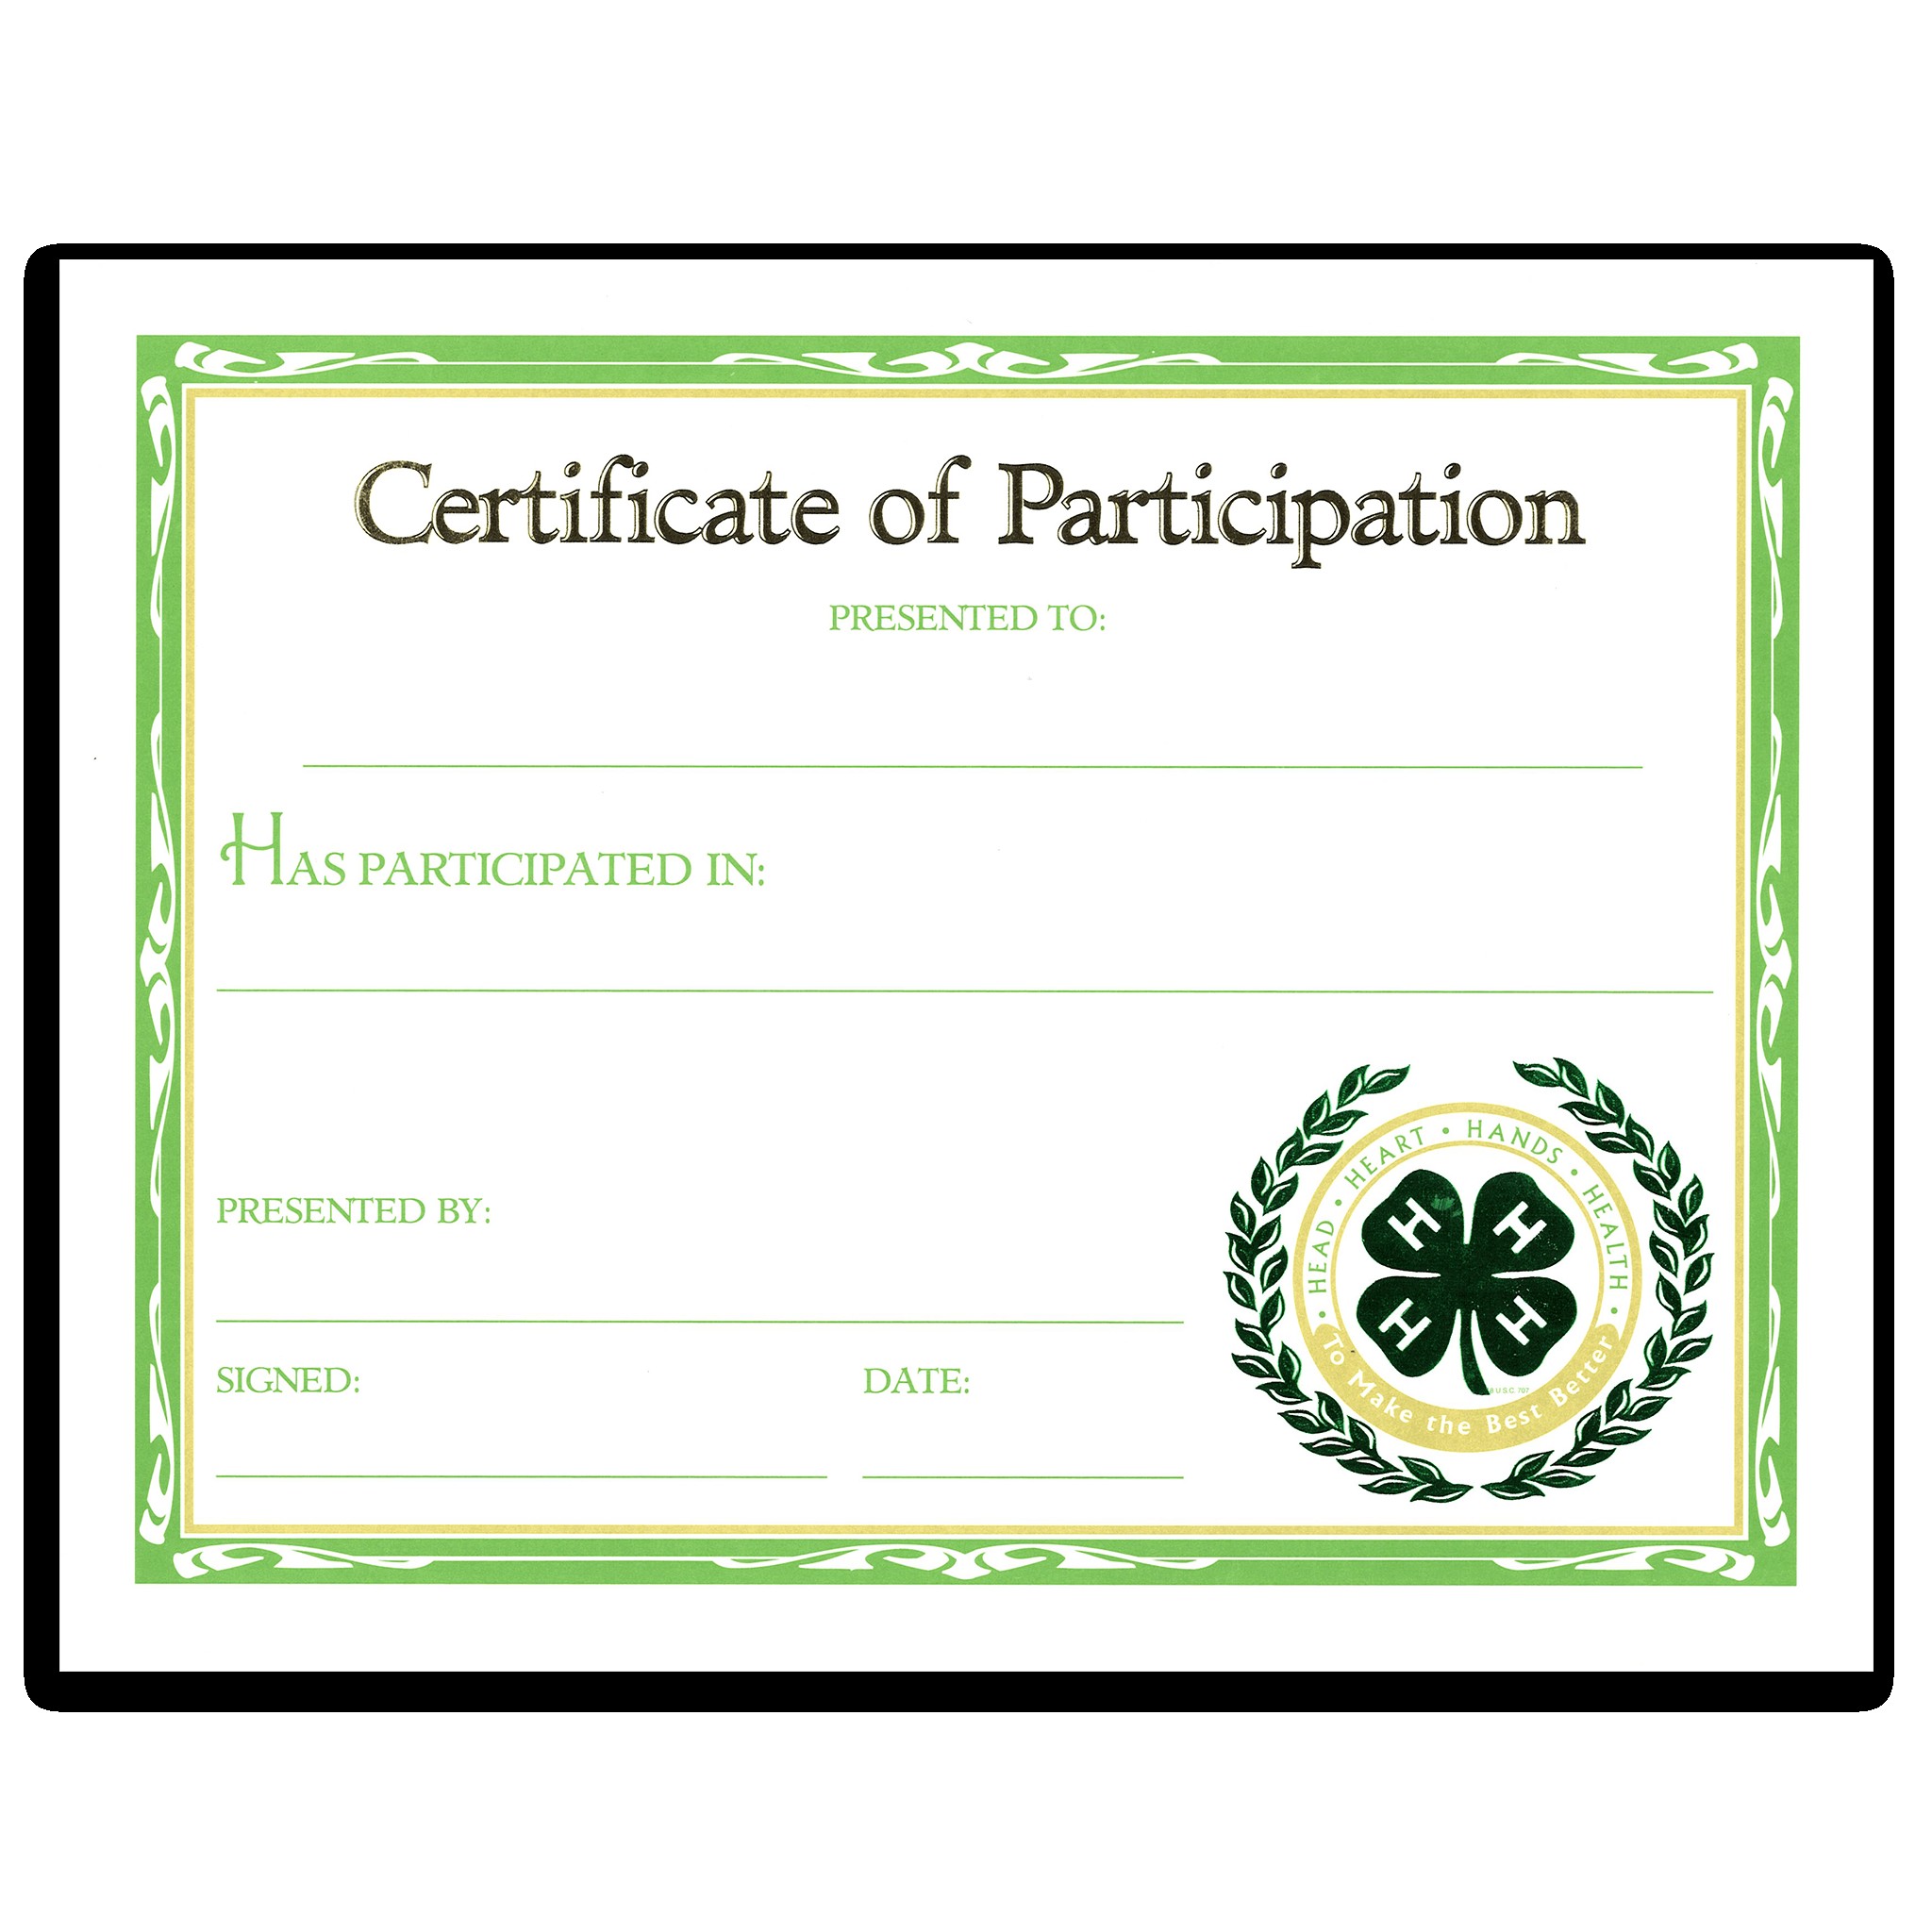 Participation Certificate Shop 4 H Images